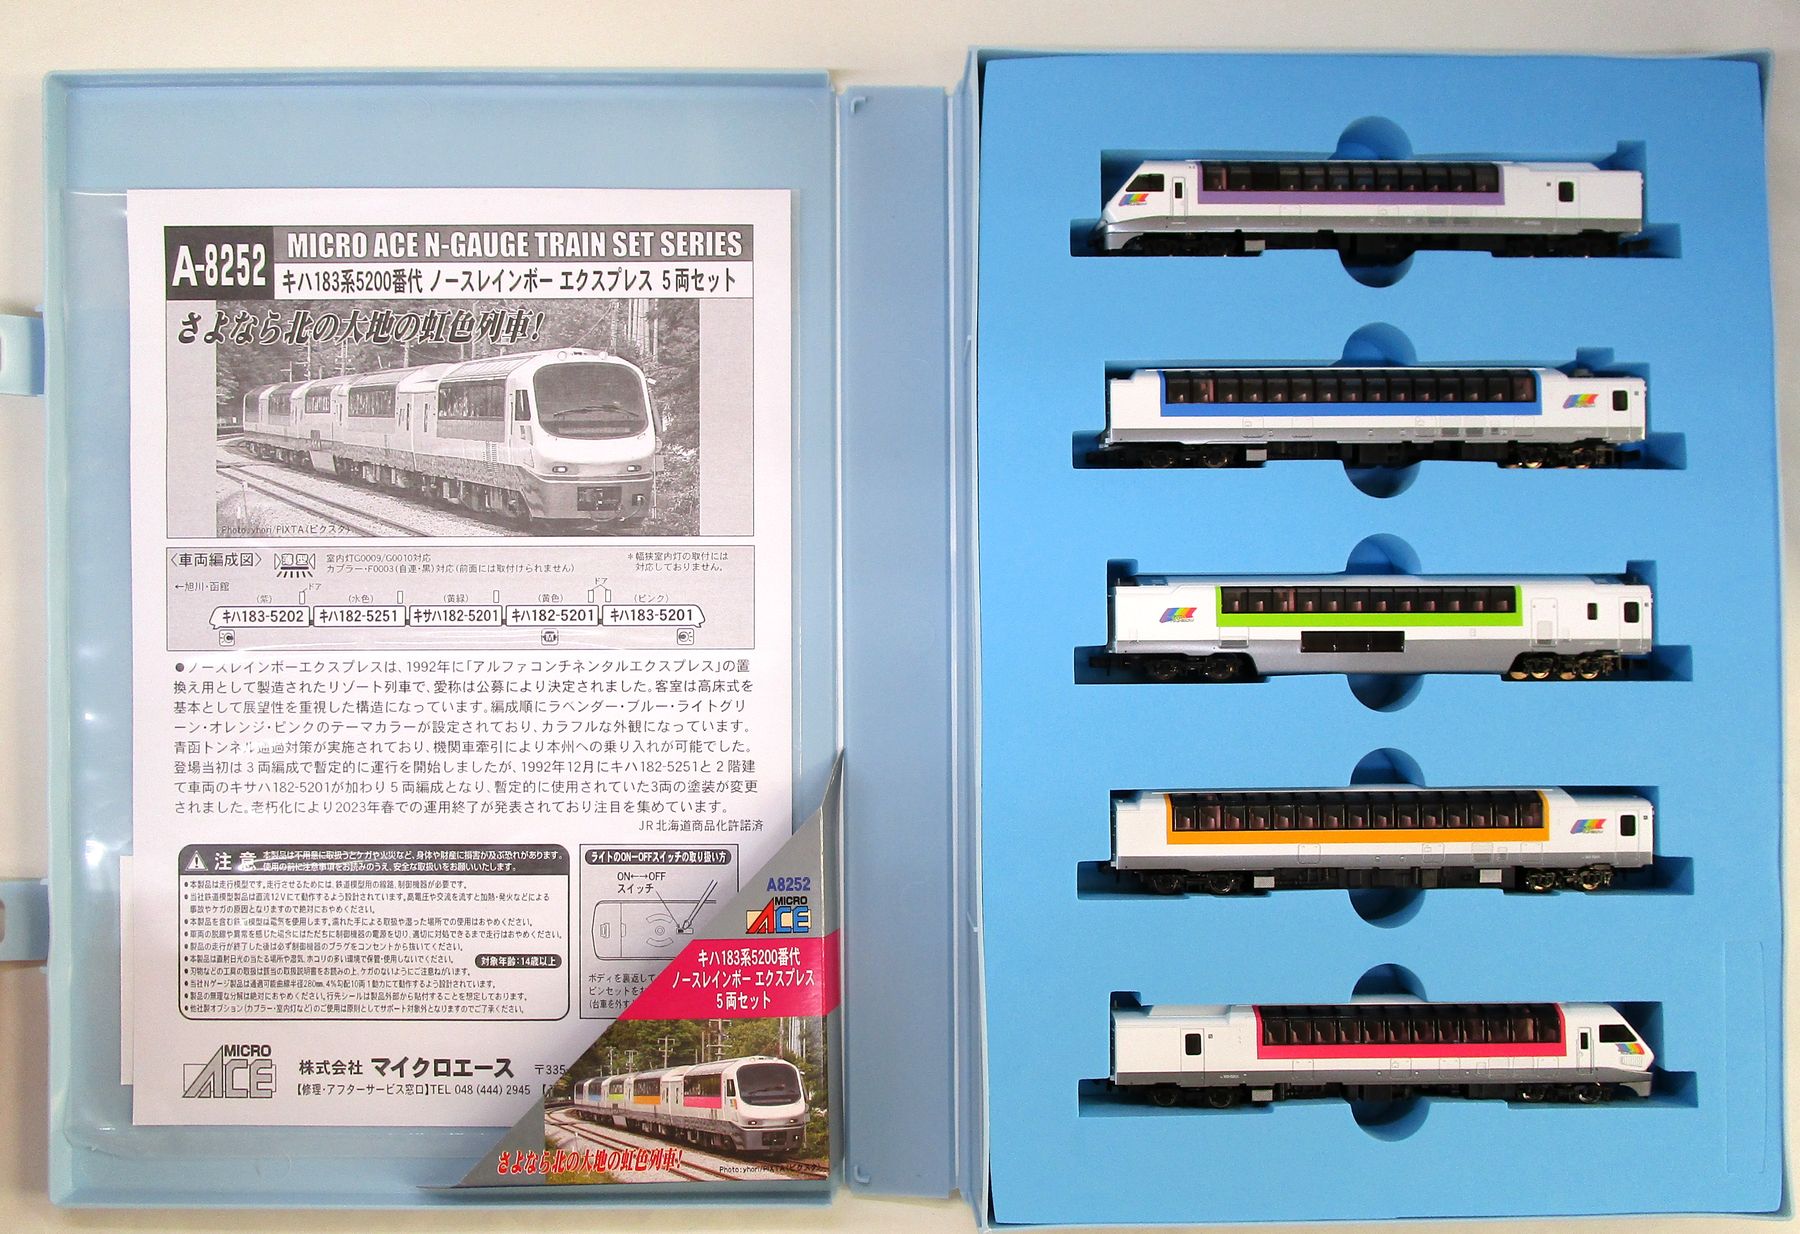 公式]鉄道模型(A8252キハ183系5200番代 ノースレインボーエクスプレス 